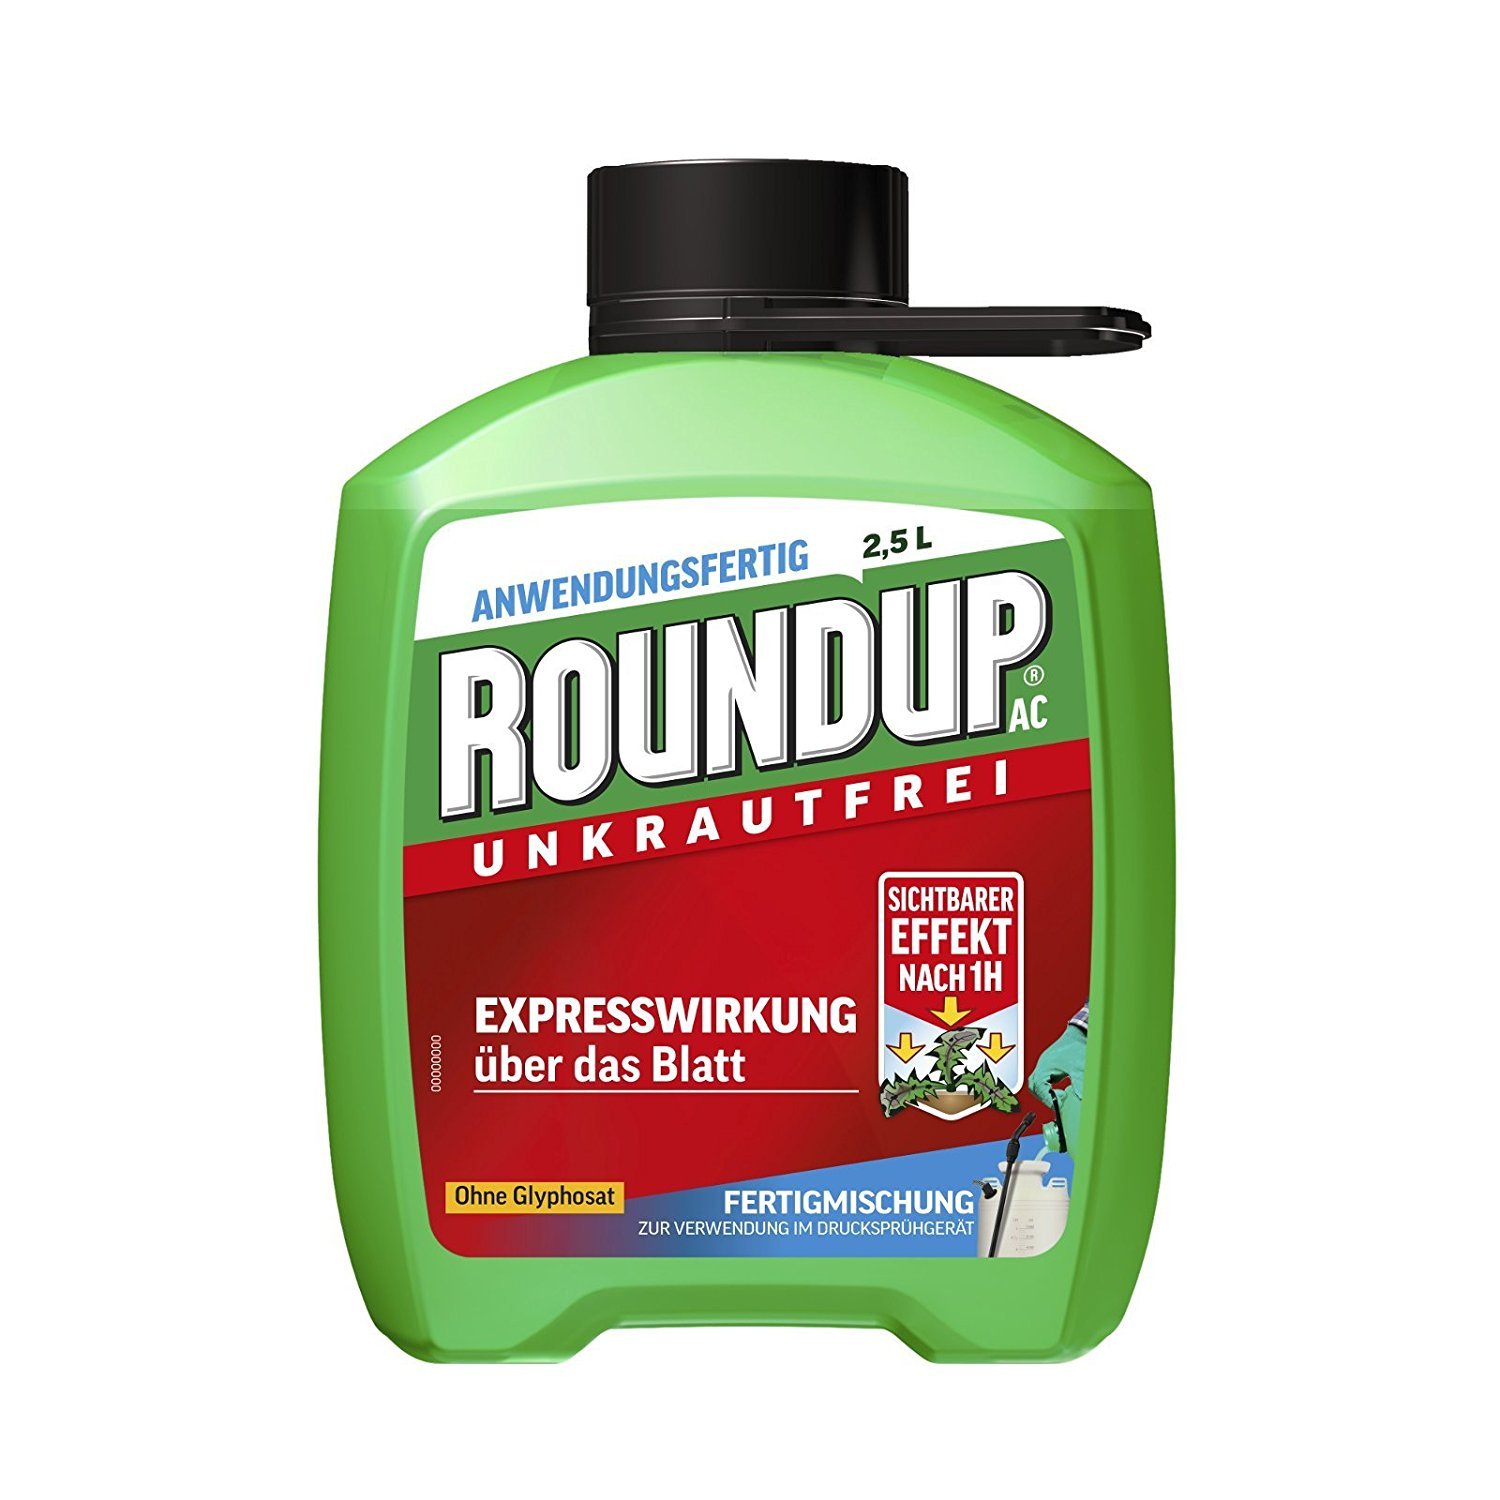 Roundup AC Unkrautfrei Nachfüllflasche 2,5 l AF - ohne Glyphosat